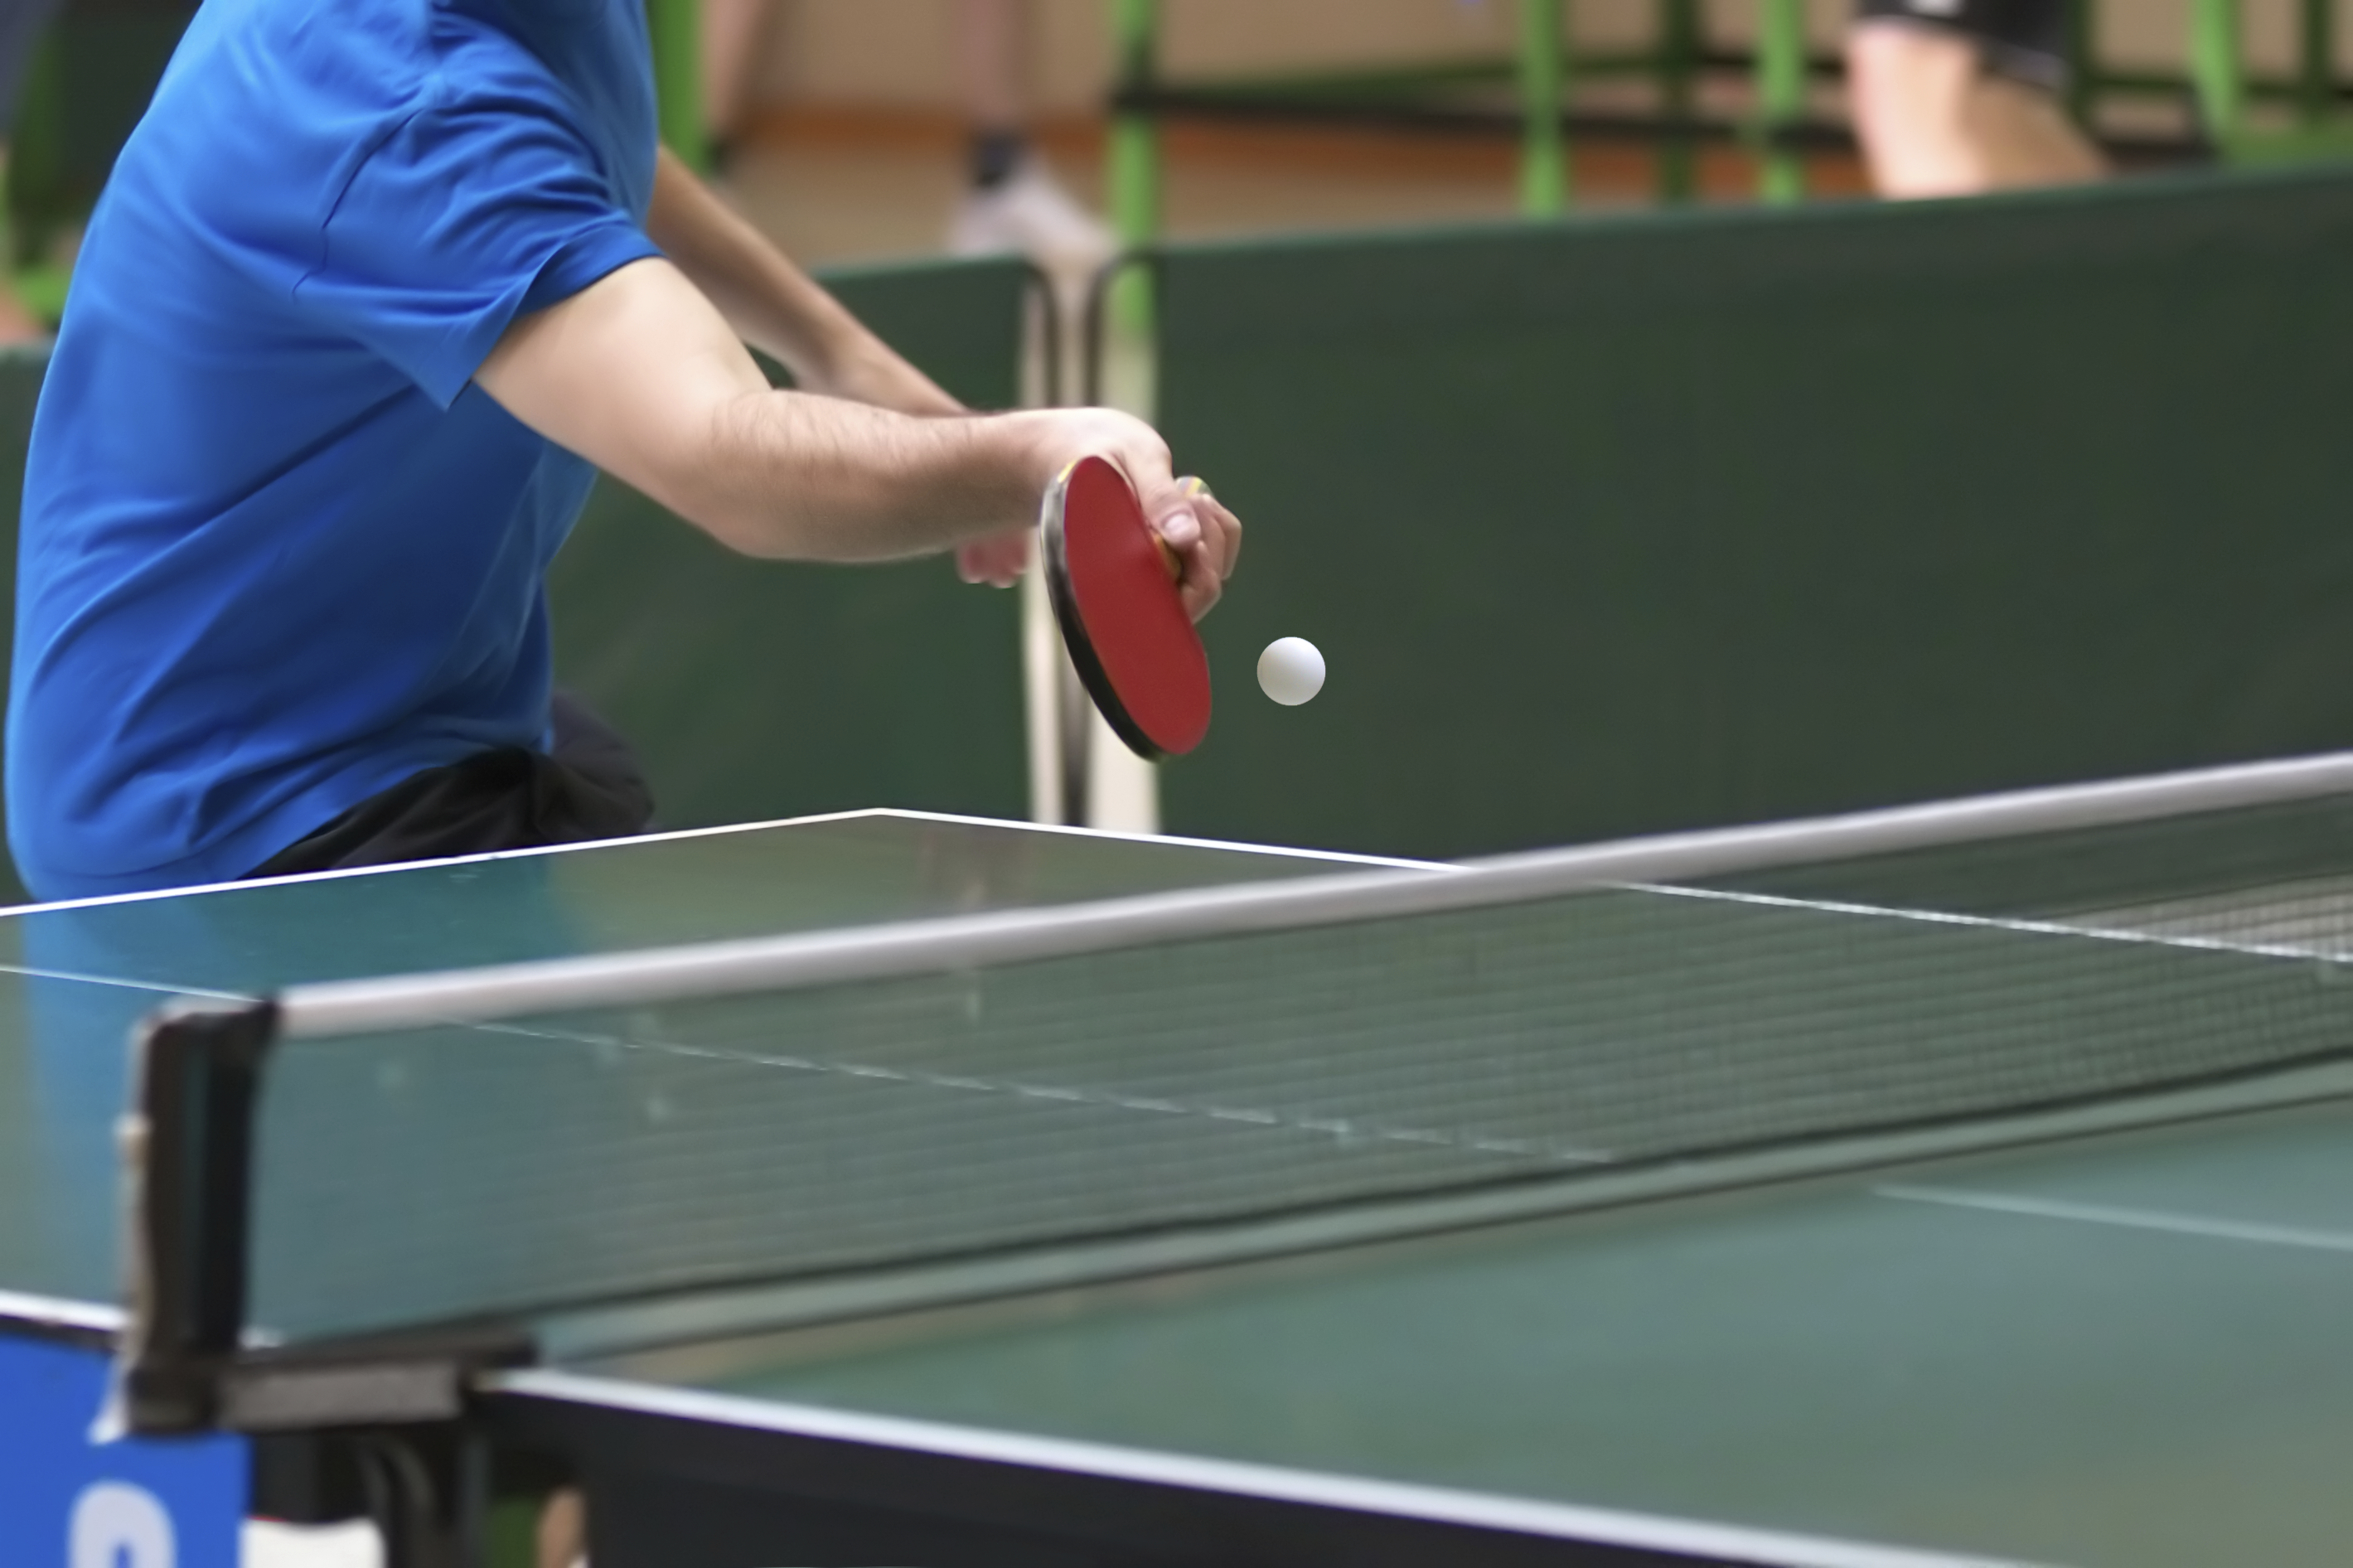 best 3-star ping pong balls online